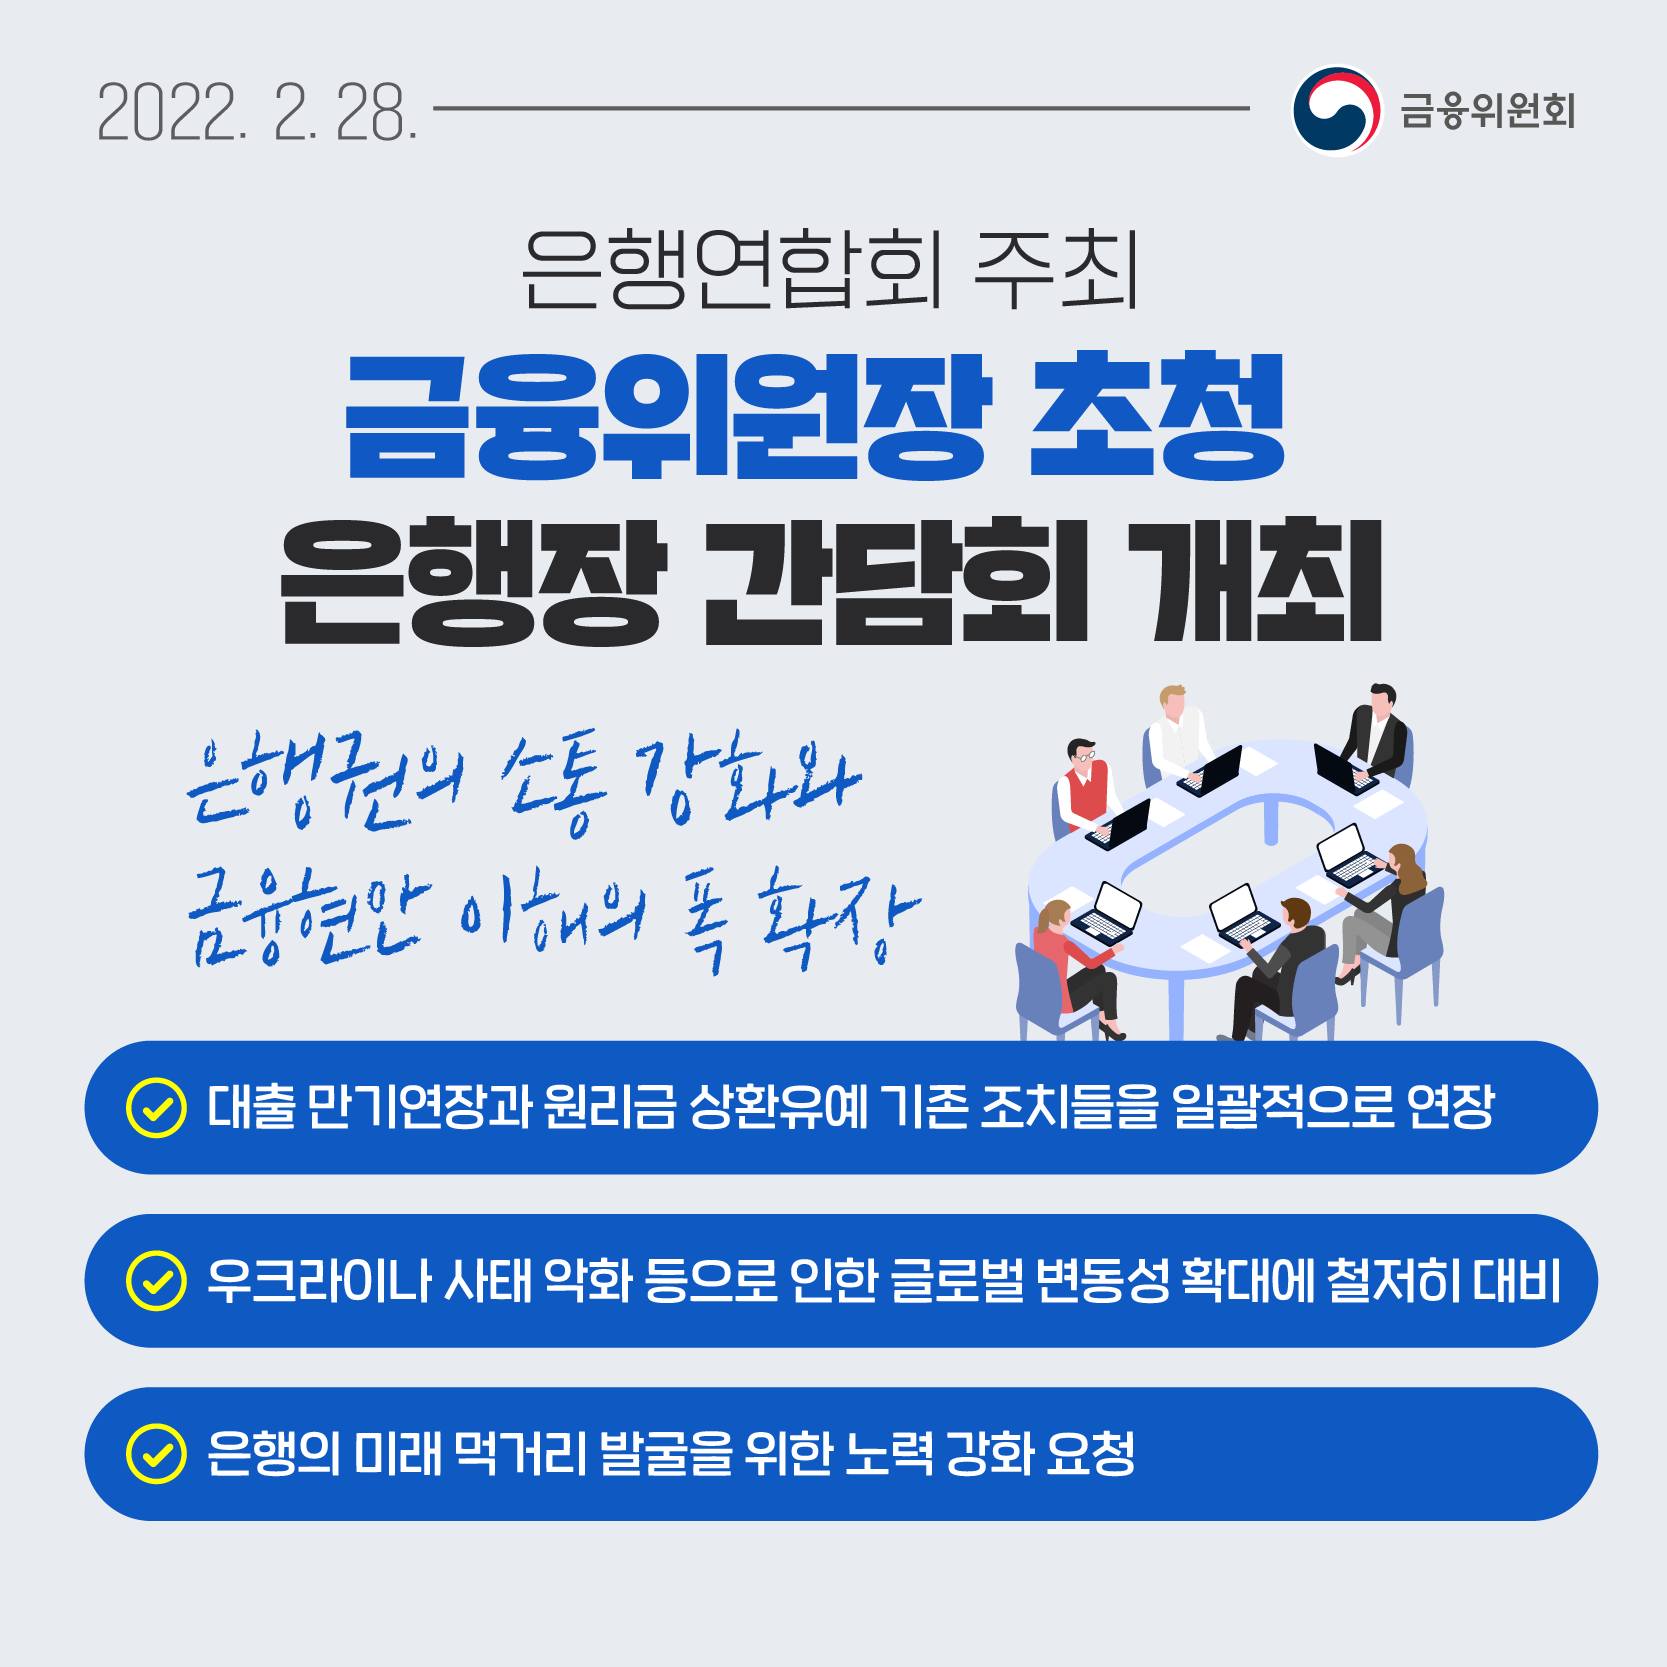 2022.2.28. 은행연합회 주최 금융위원장 초청 은행장 간담회 개최 